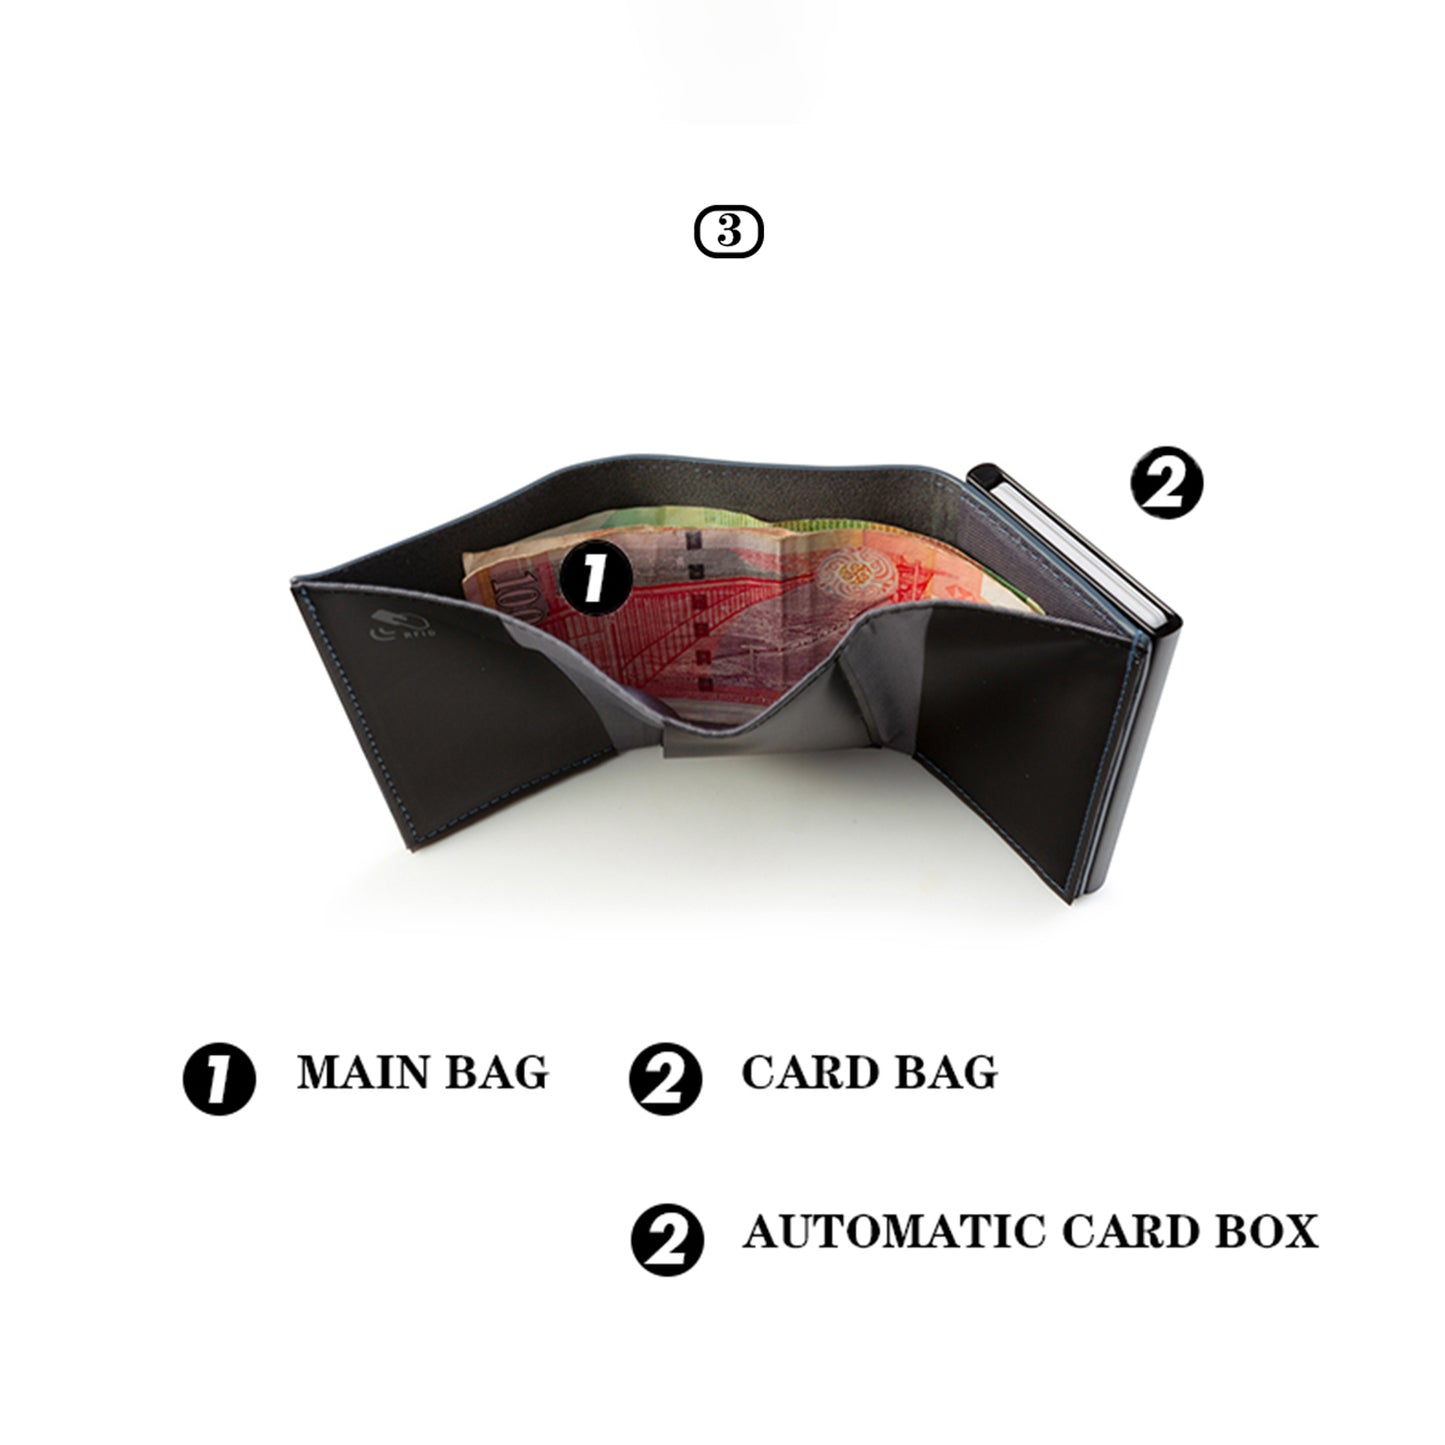 NIID Slide II Vegan Leather Mini Wallet Gray